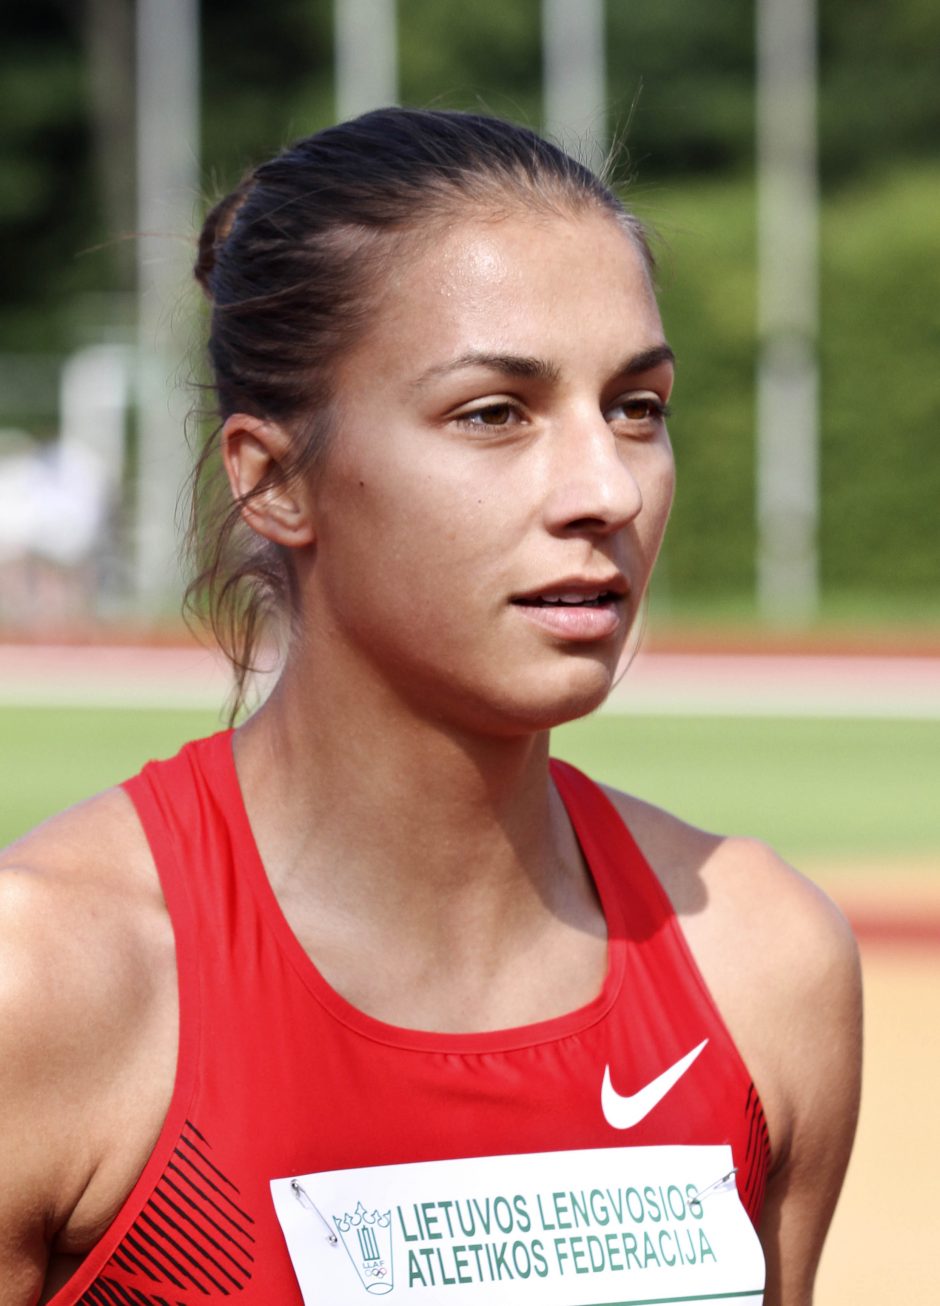 Bėgikė E. Balčiūnaitė liko per žingsnį nuo medalio